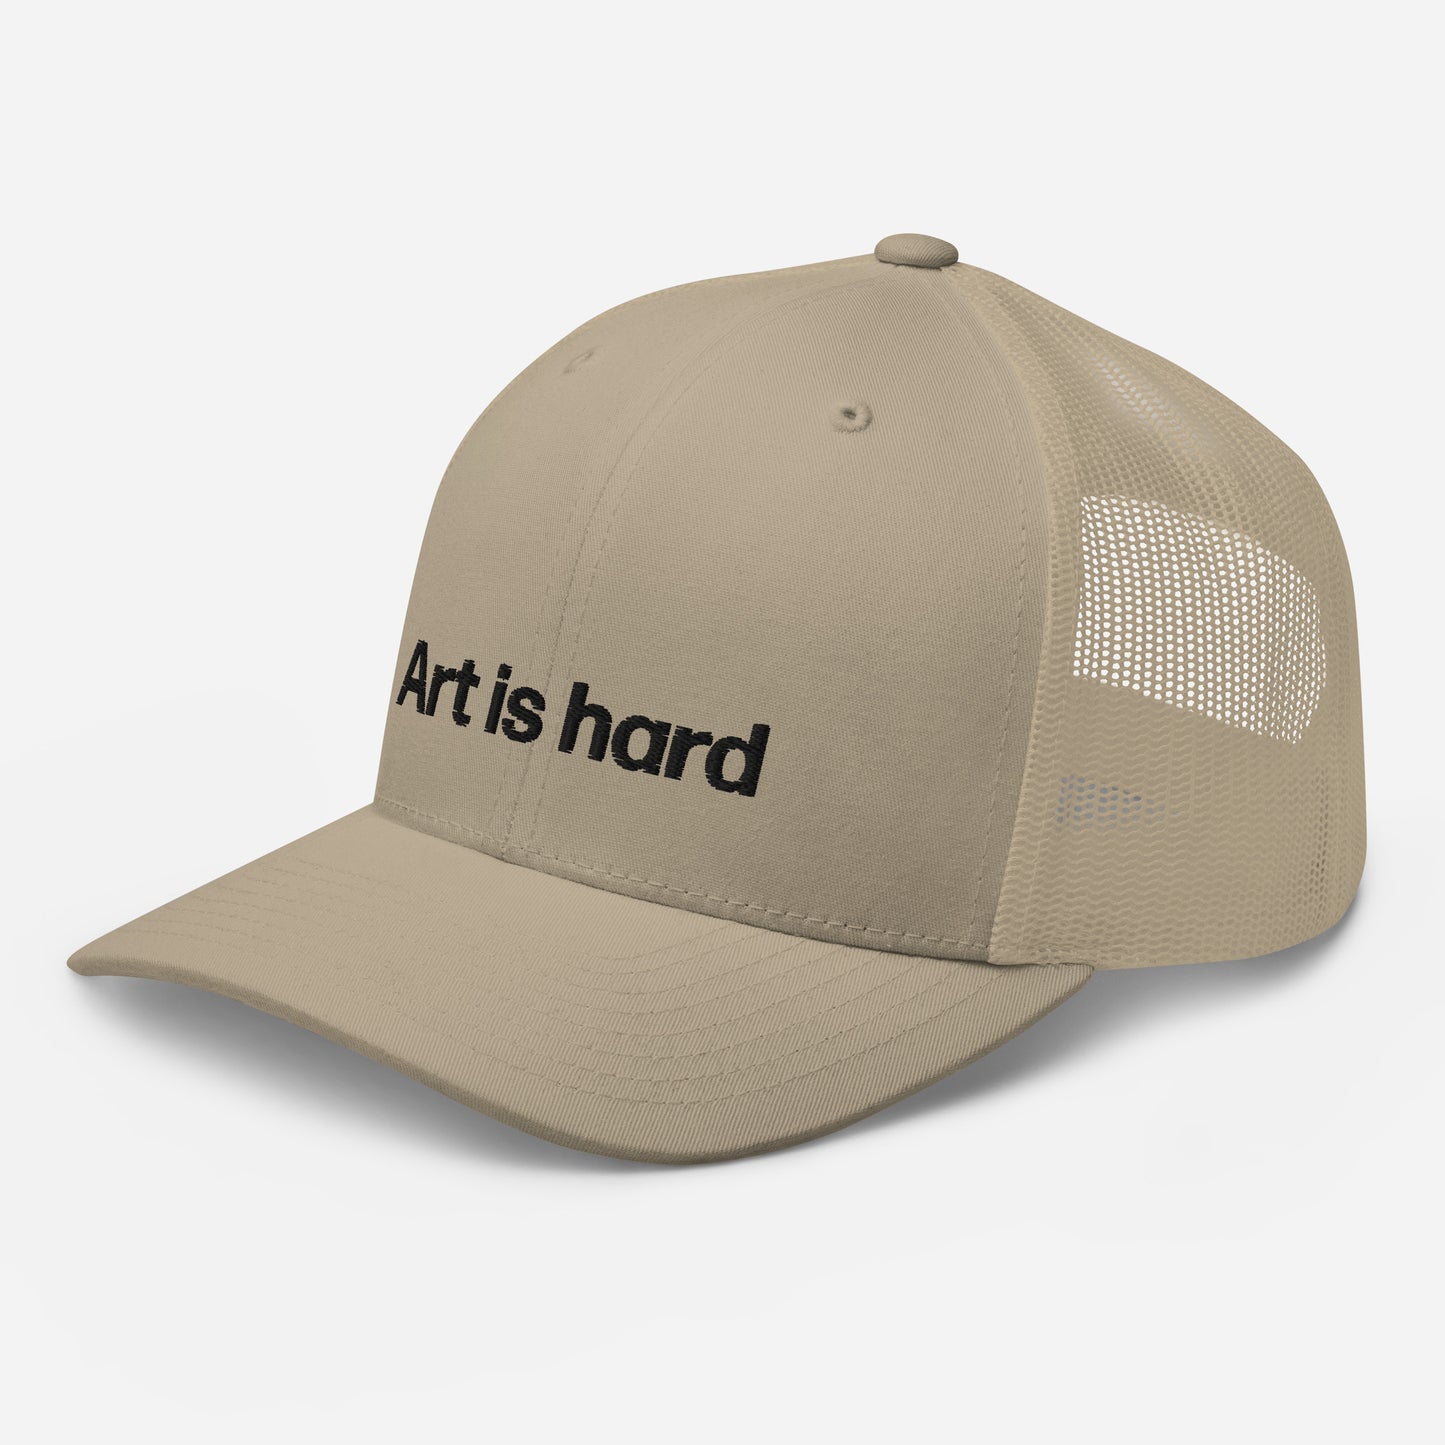 art is hard | trucker hat